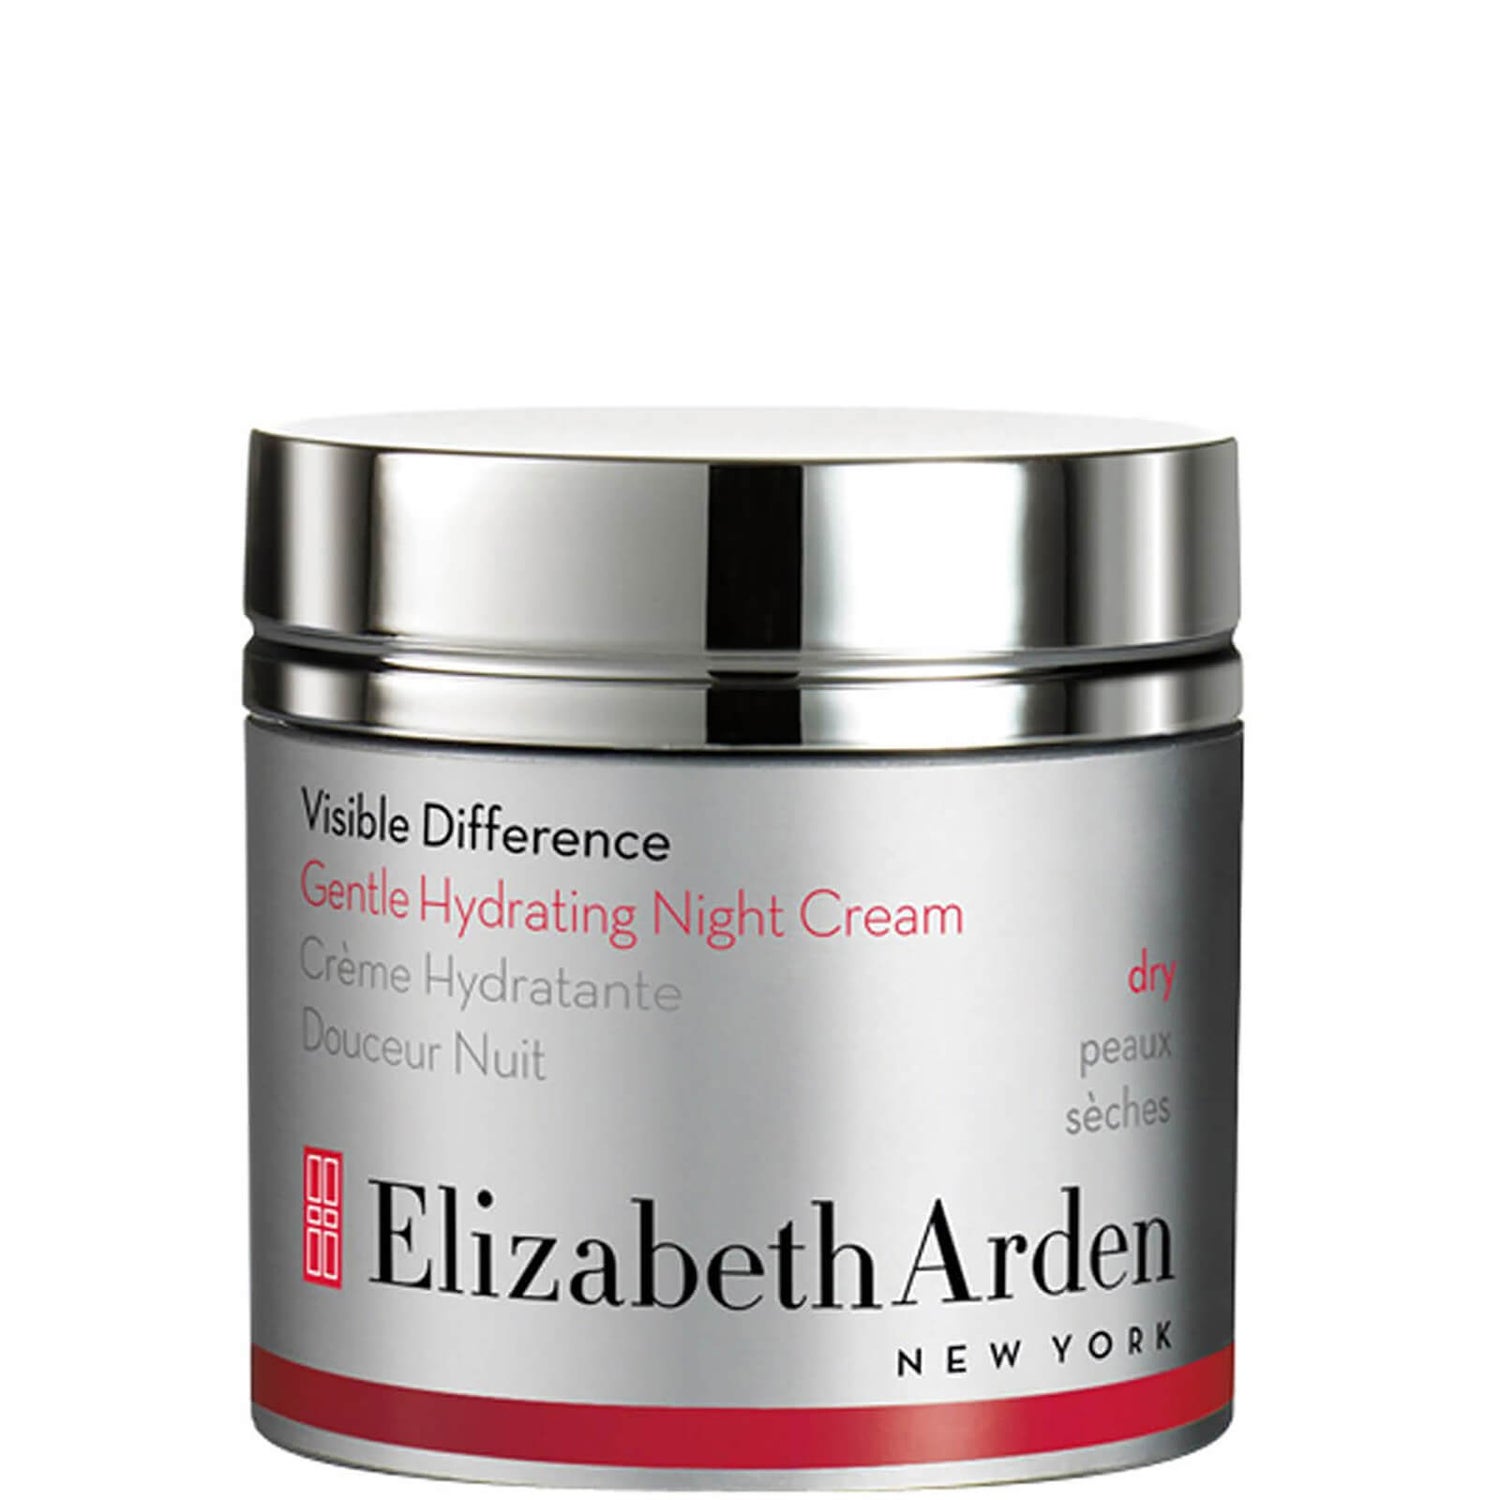 Elizabeth Arden Visible Difference nawilżający krem na noc (50 ml)